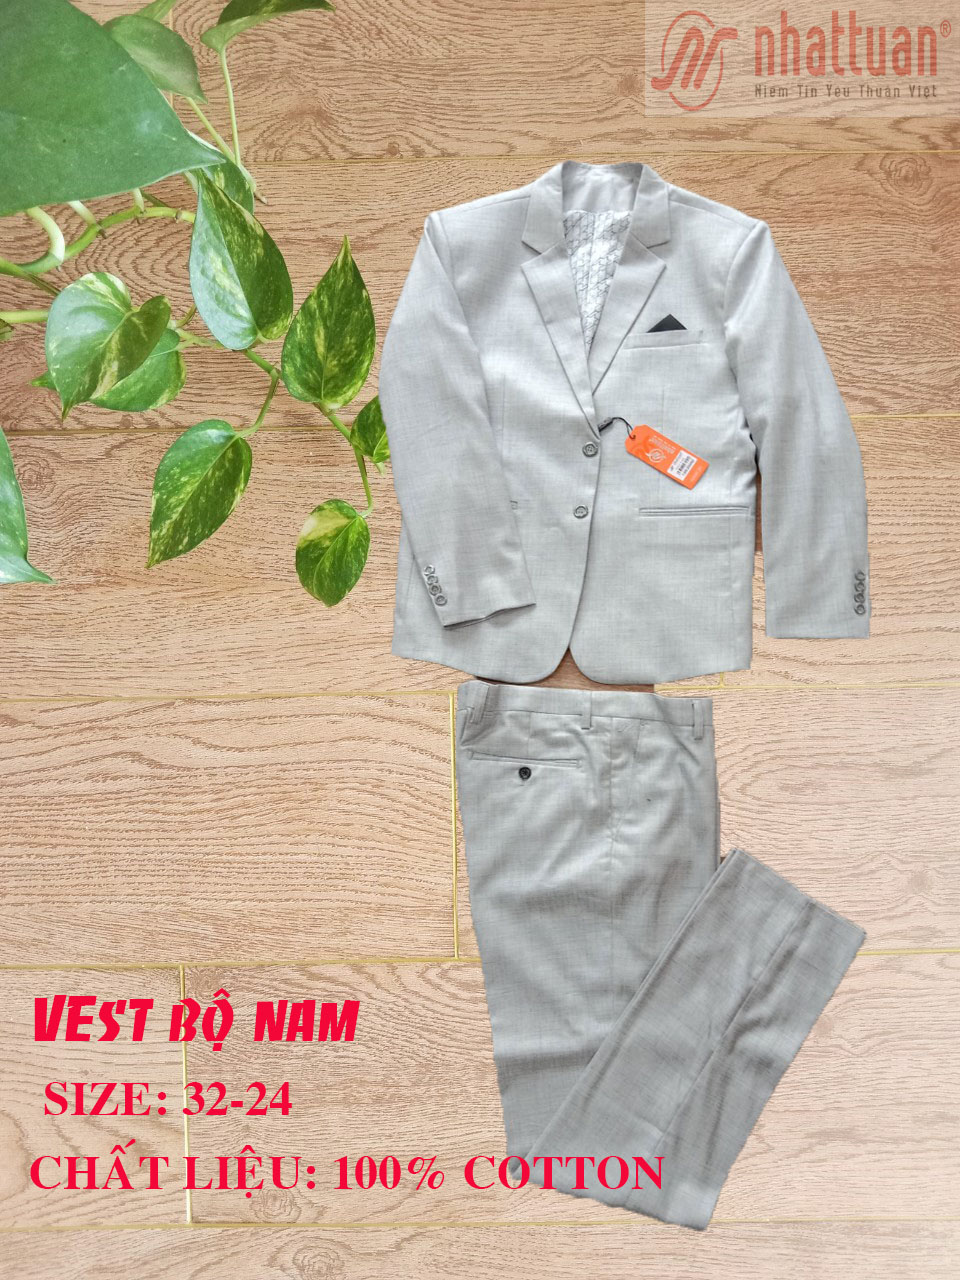 Bộ Vest nam phong cách lịch lãm 100% cotton của Nhật Tuấn (NATA), giảm giá 50